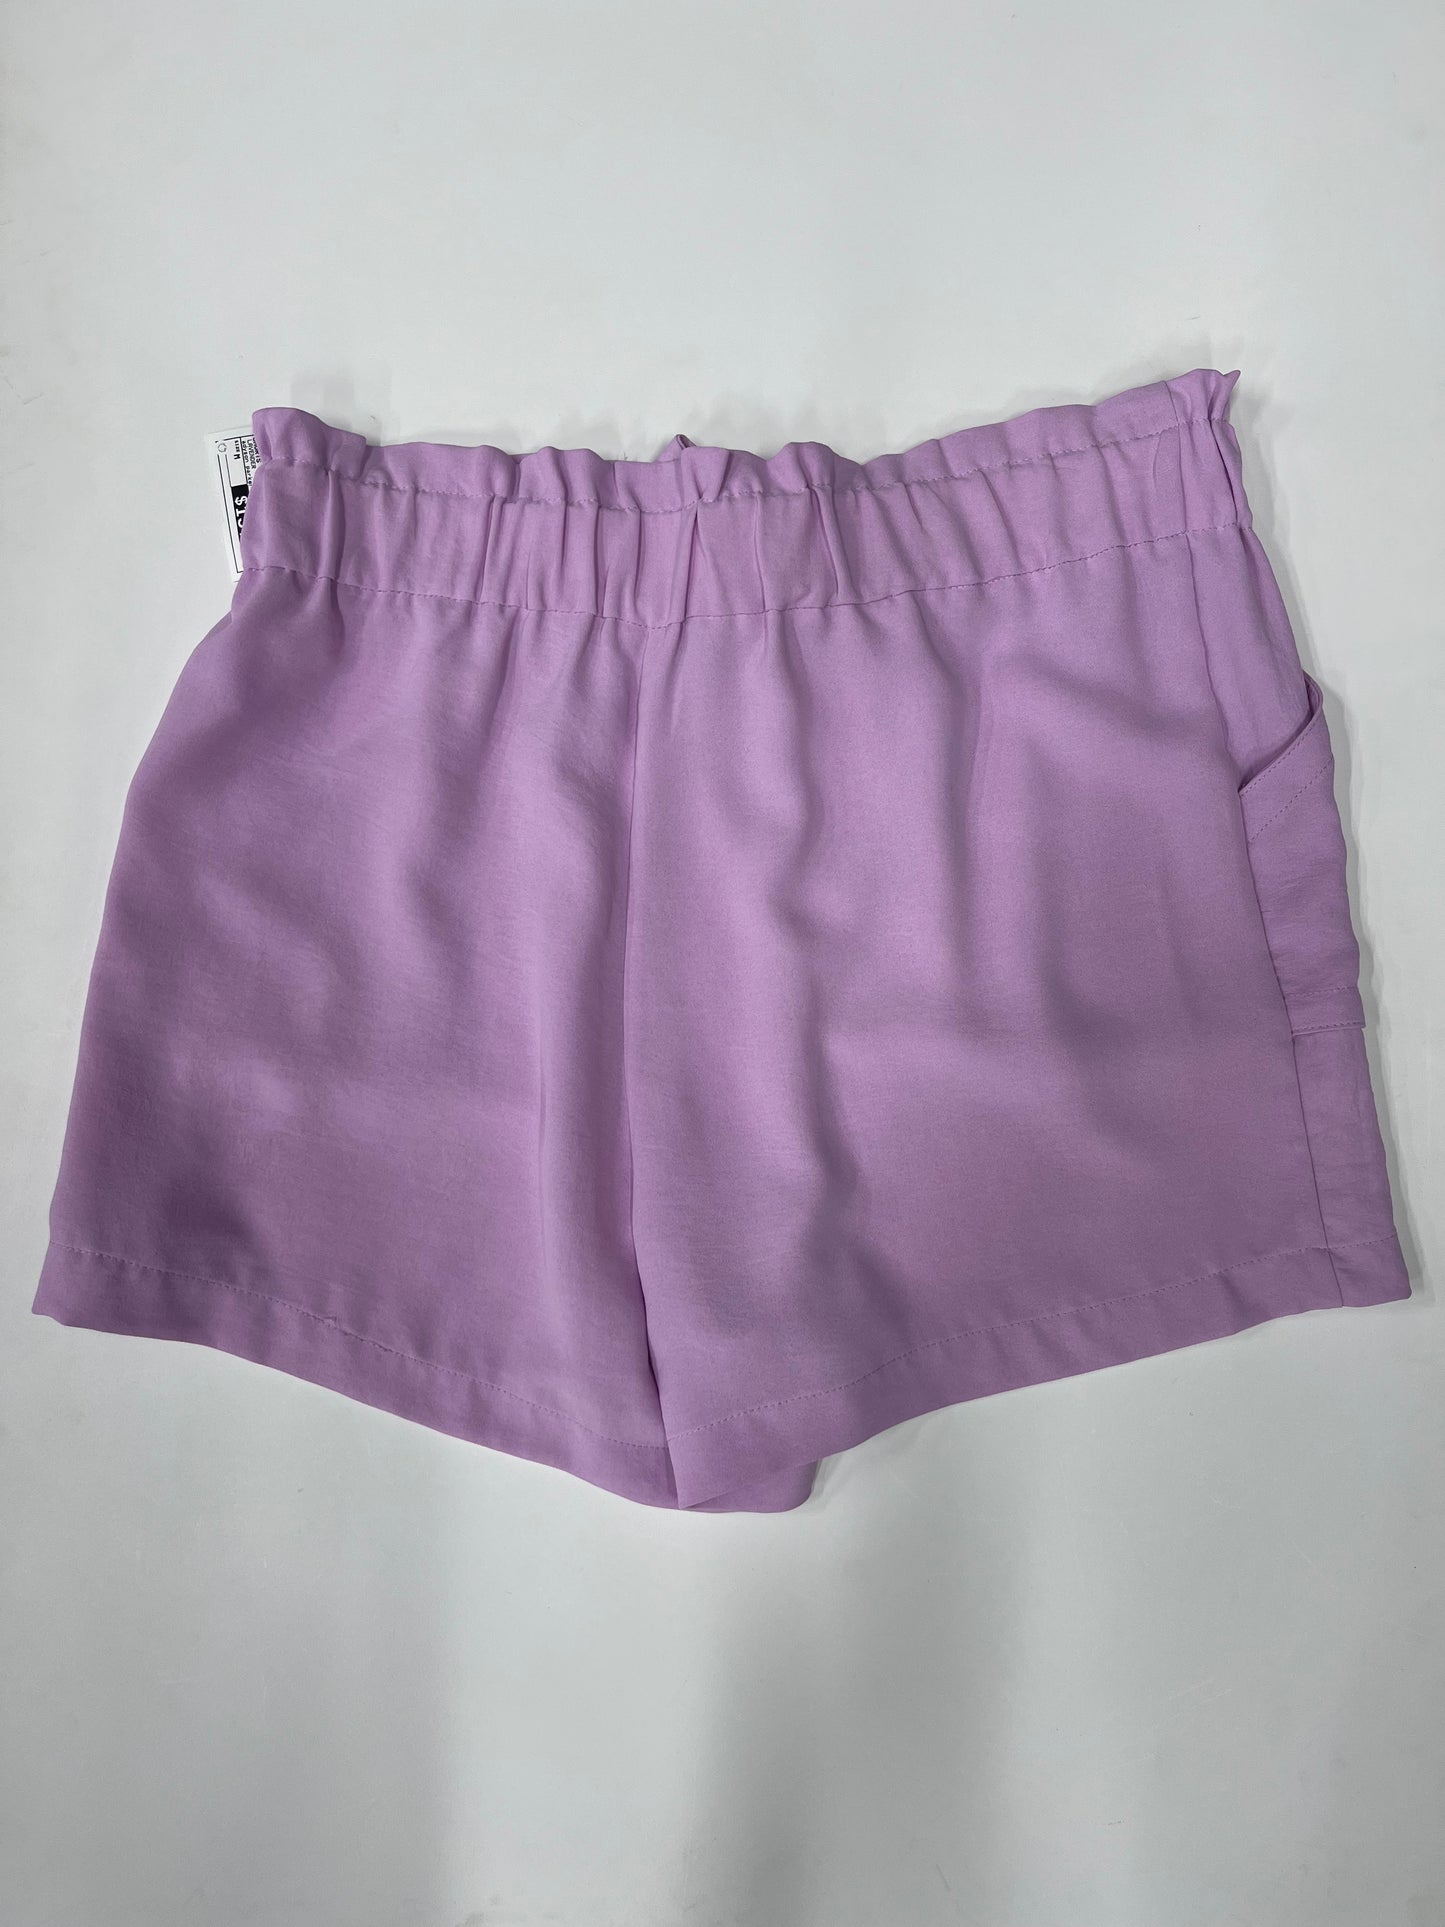 Adyson Parker Pull On Waist Tie Shorts Purple Size M